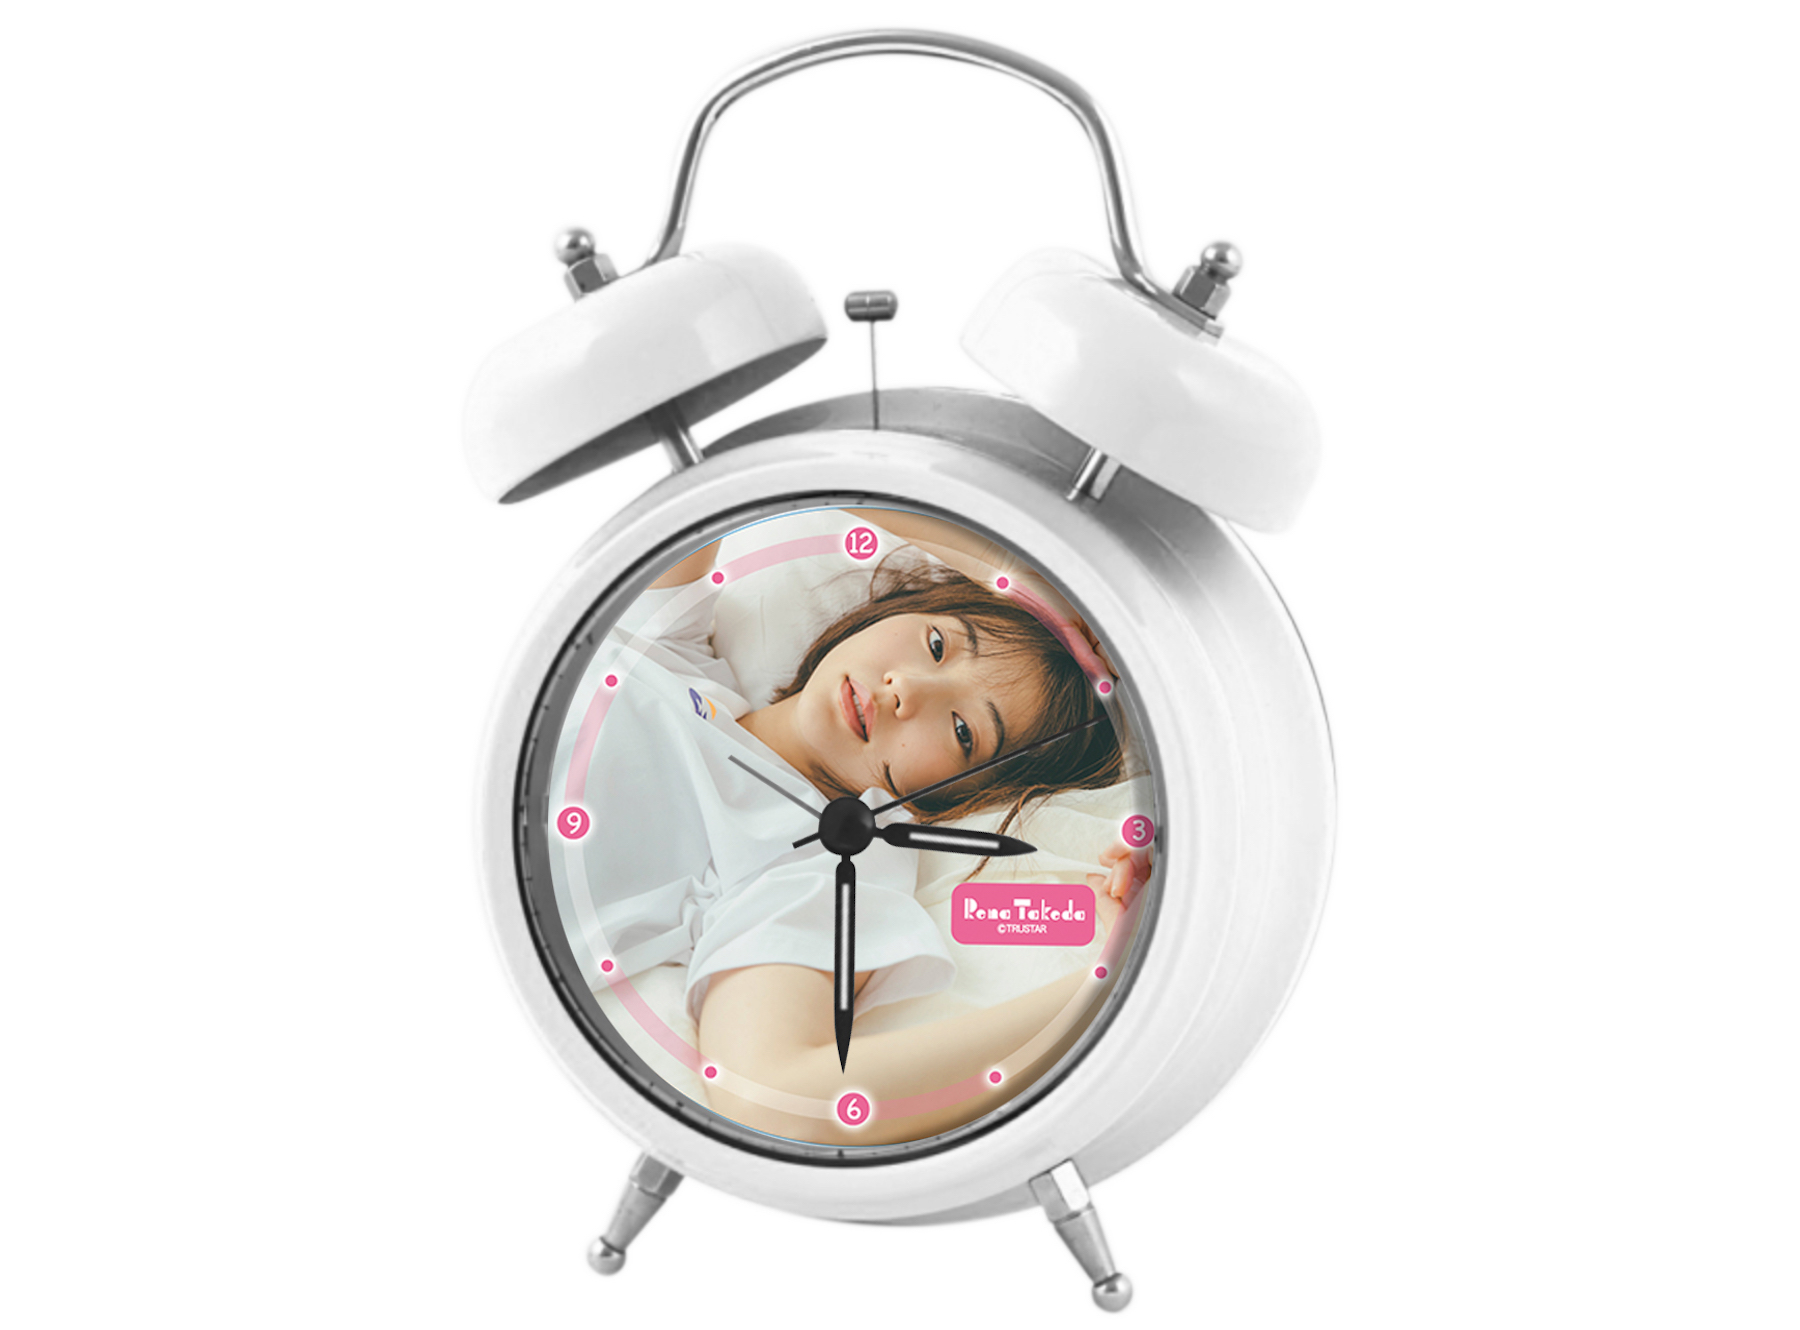 武田玲奈の声で毎朝起きよう オリジナルボイス目覚まし時計をプロデュース Actress Tv ｱｸﾄﾚｽ ﾃｨｰｳﾞｨｰ